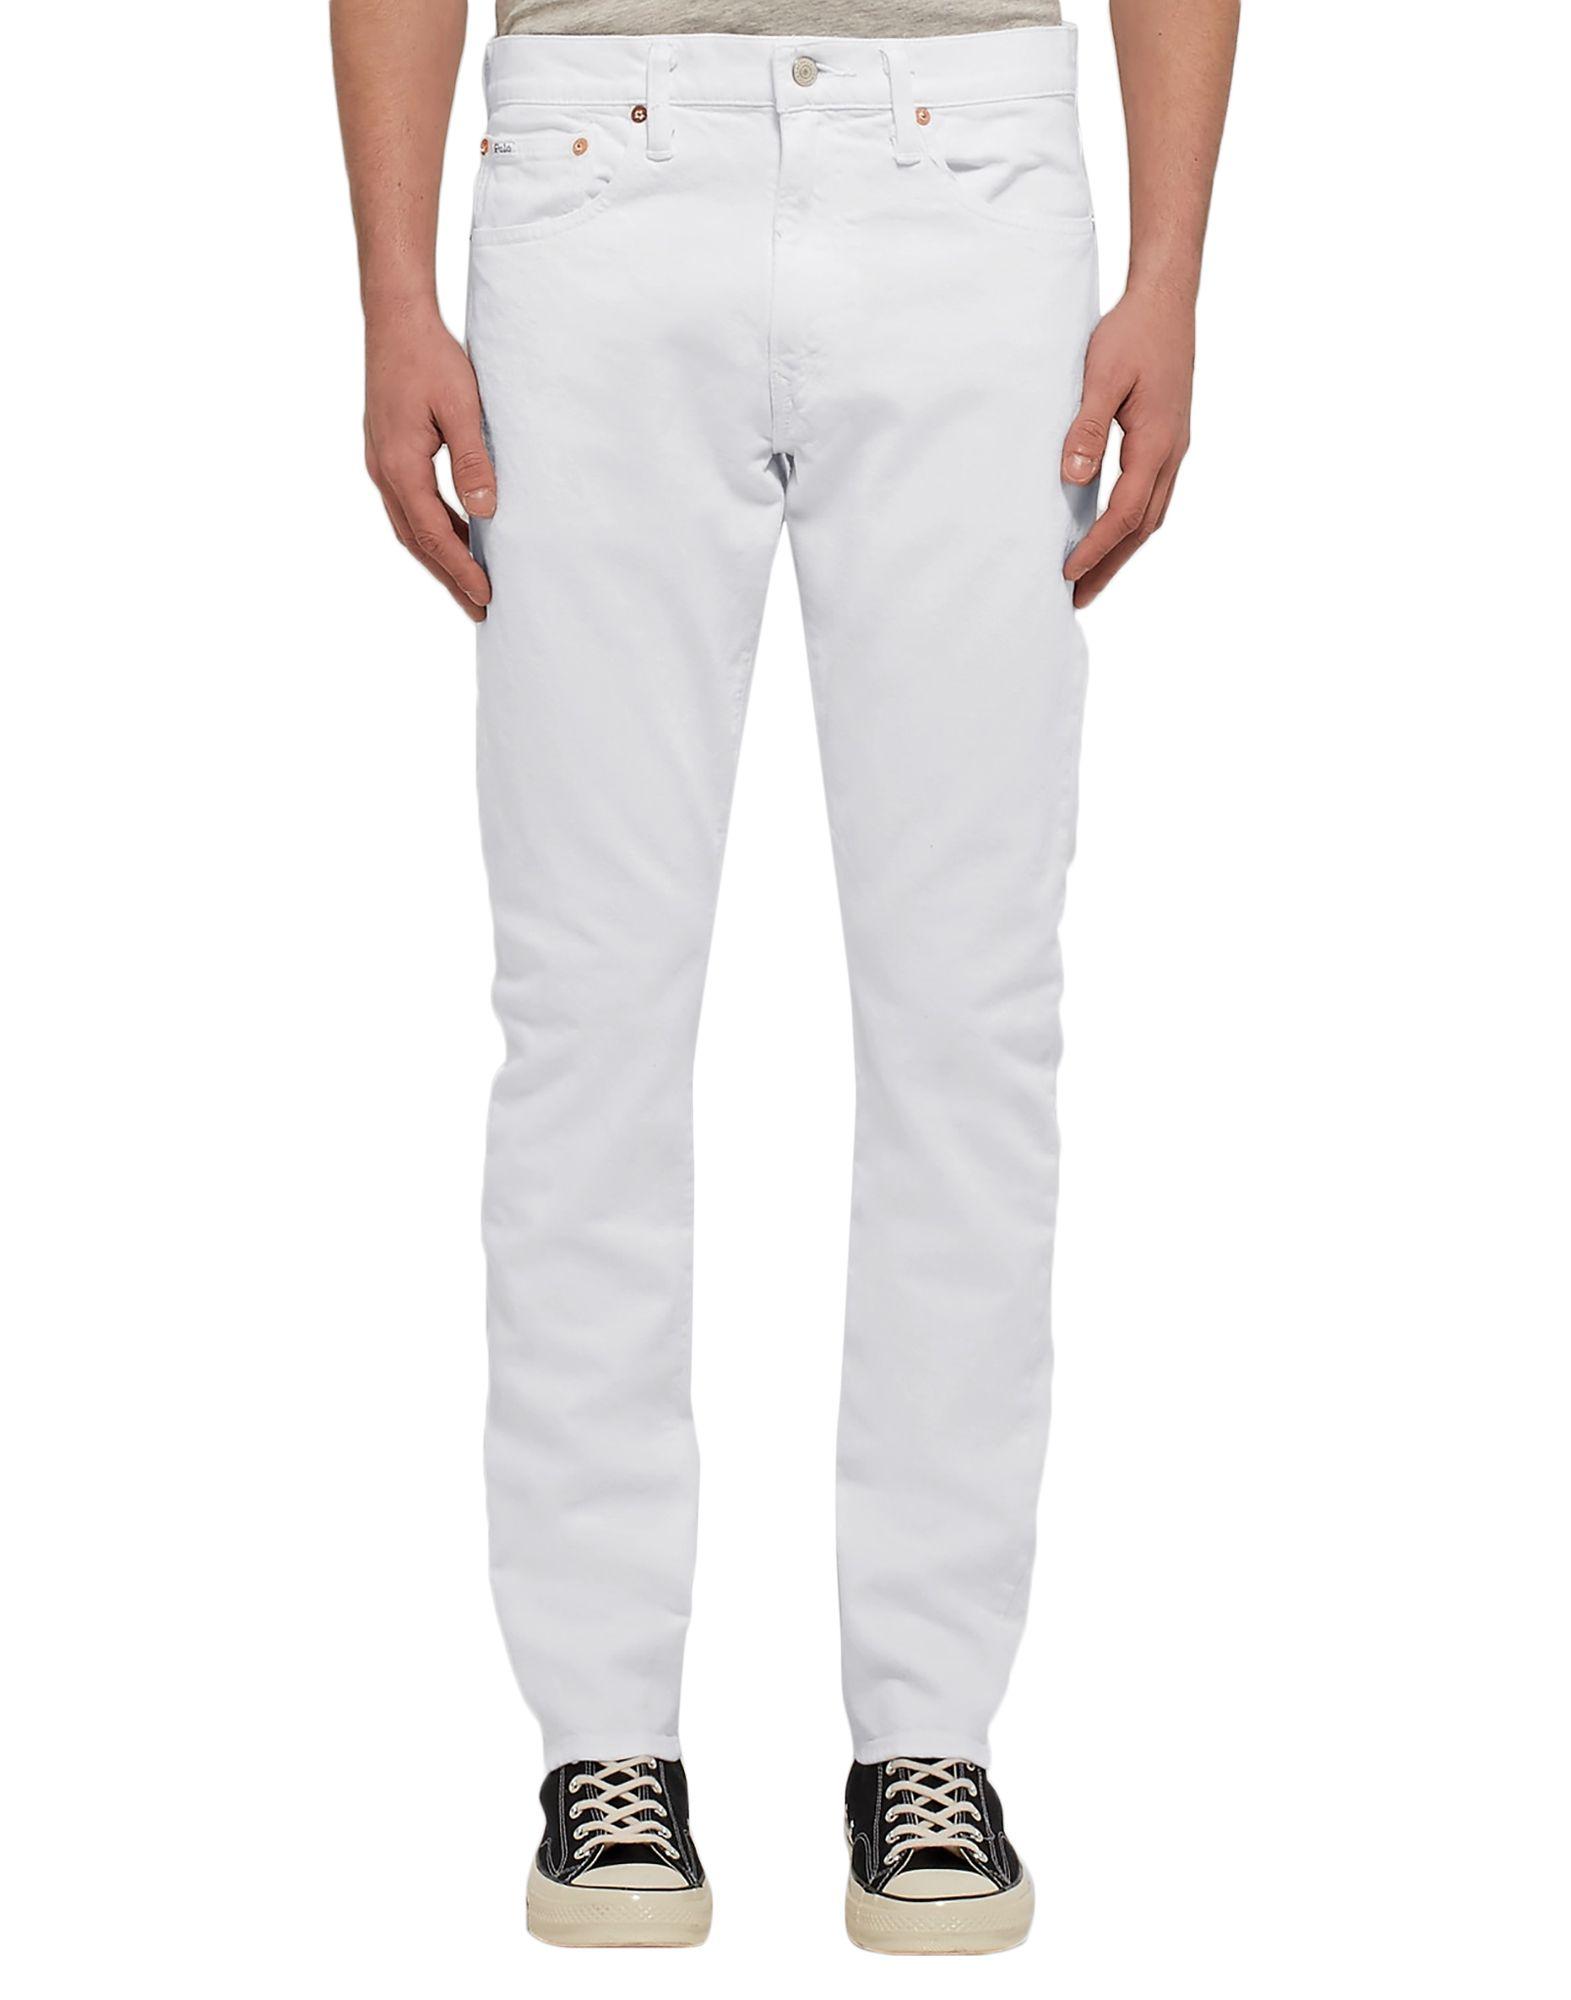 Polo Ralph Lauren Denim Pants in White for Men - Lyst